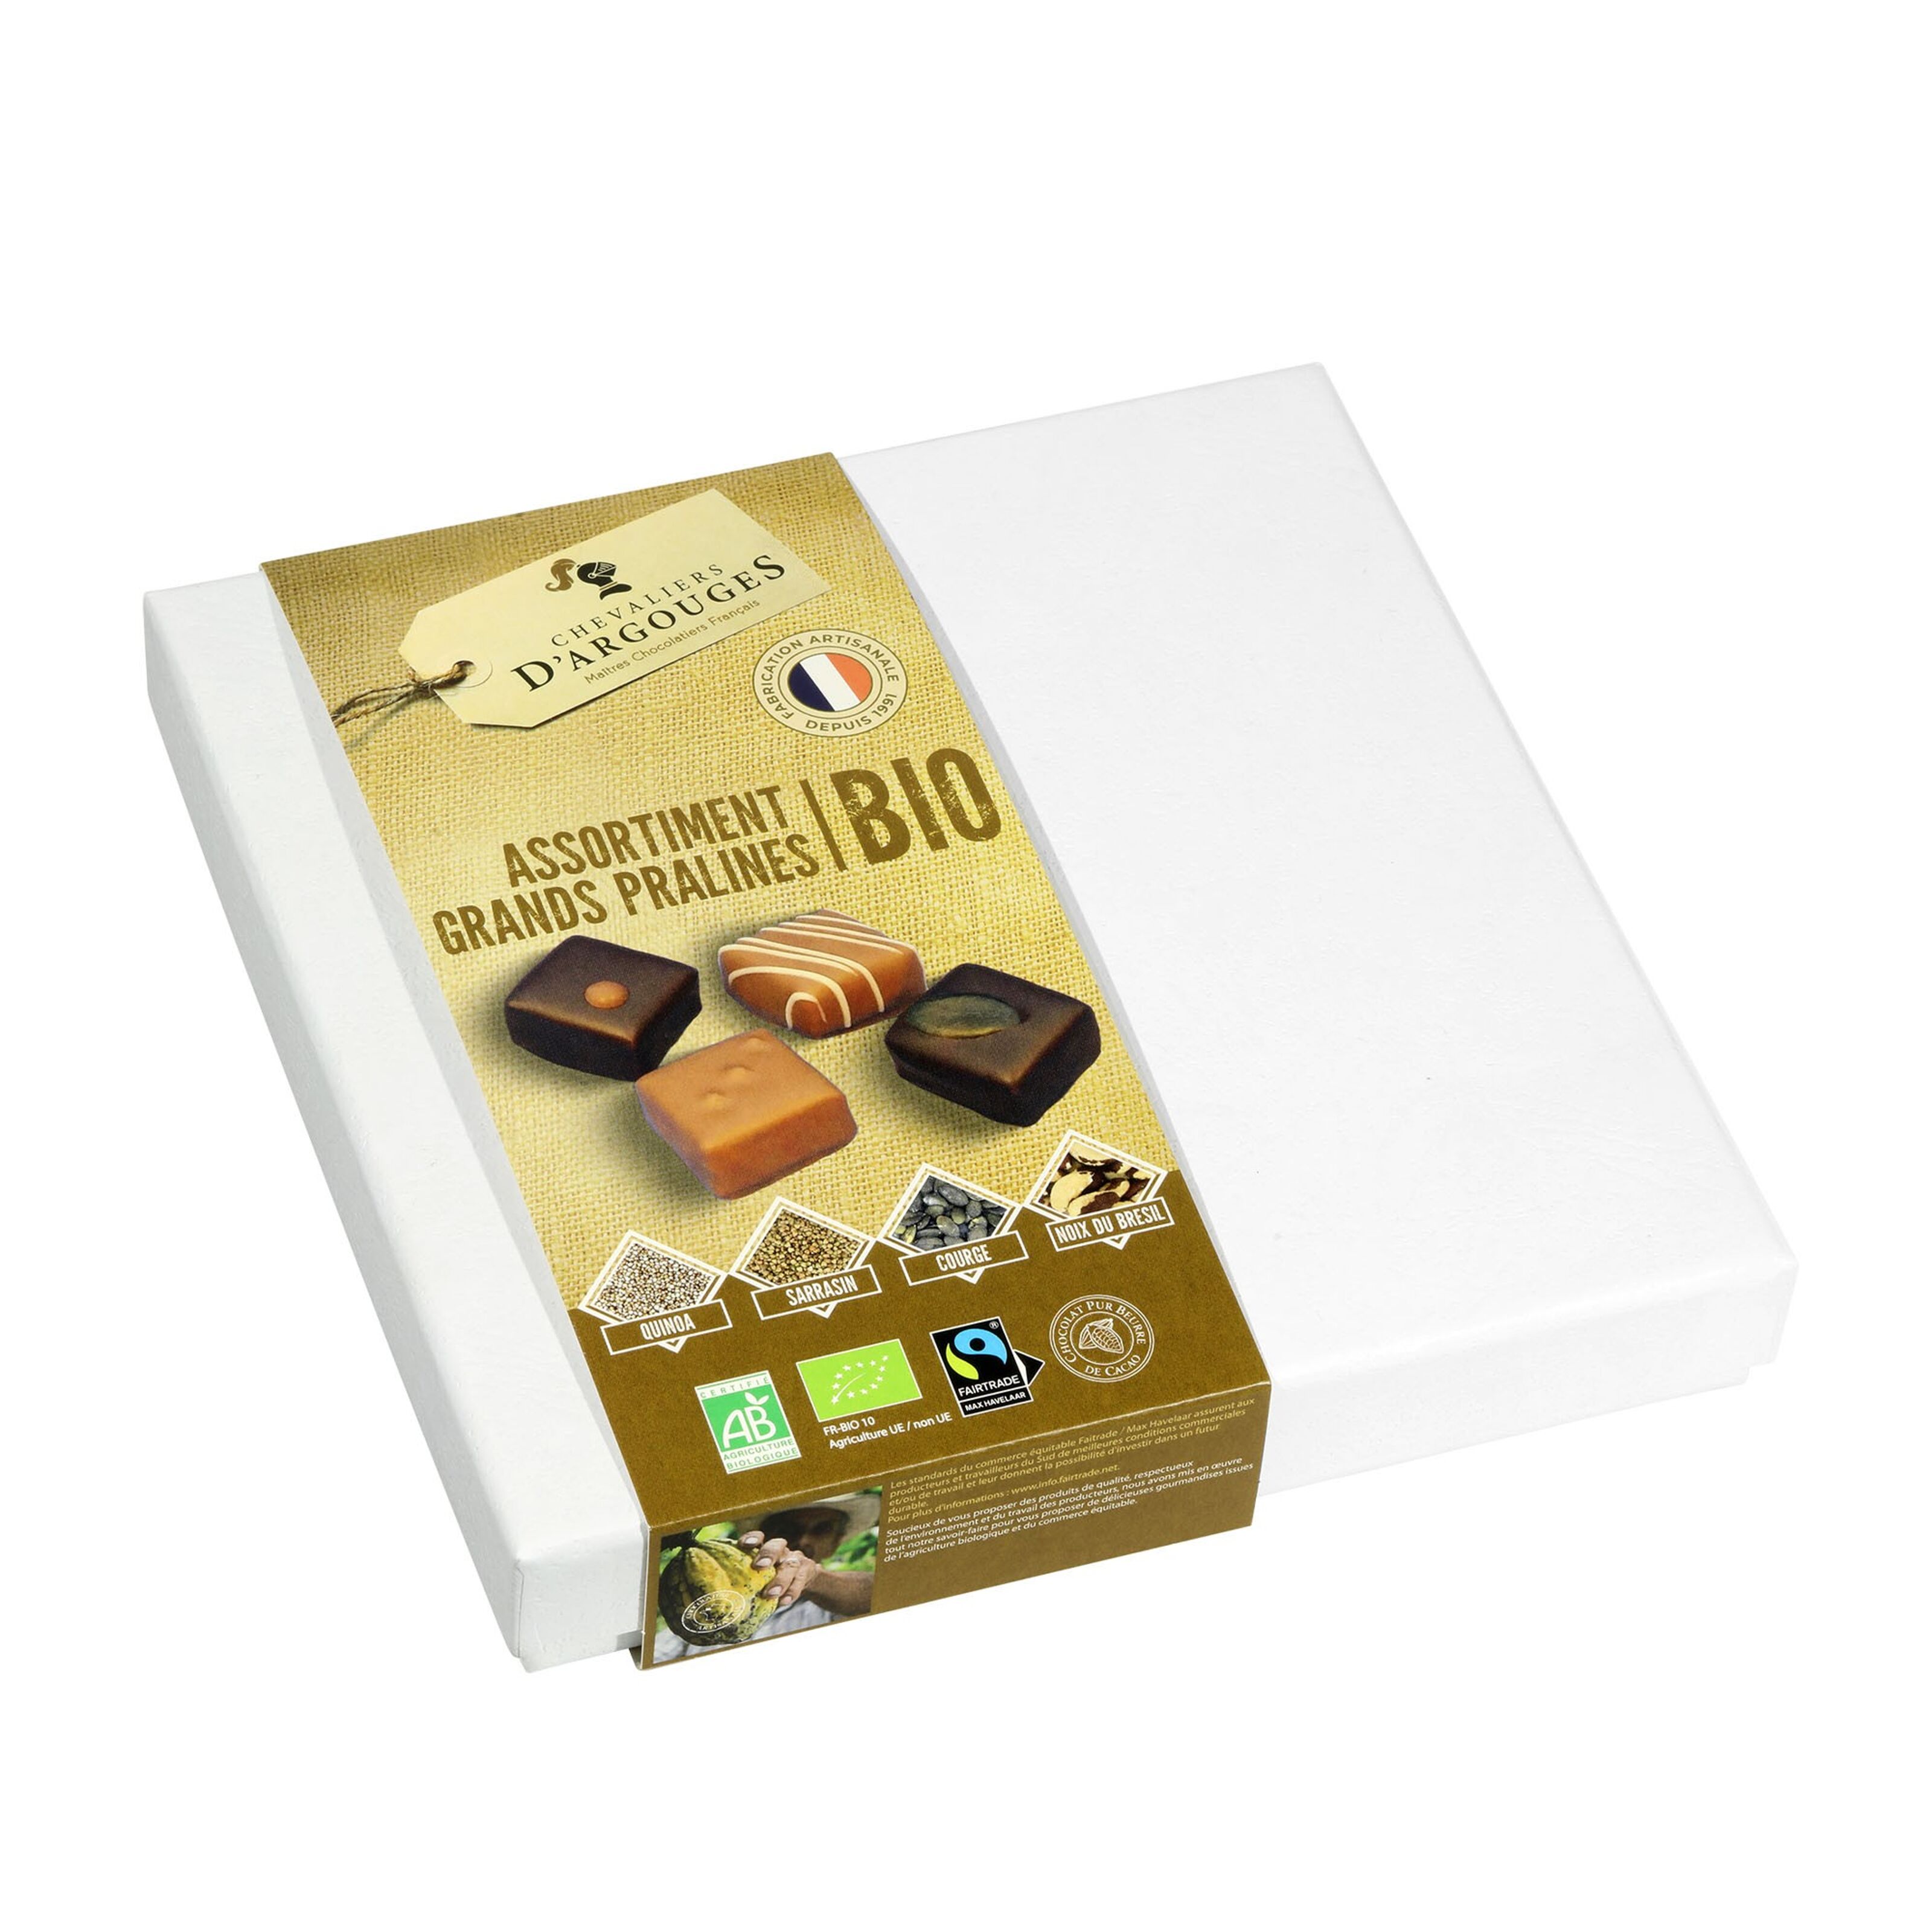 Chocolat artisanal Assortiment Noir 70% des Chevaliers 365g à 13,50 €